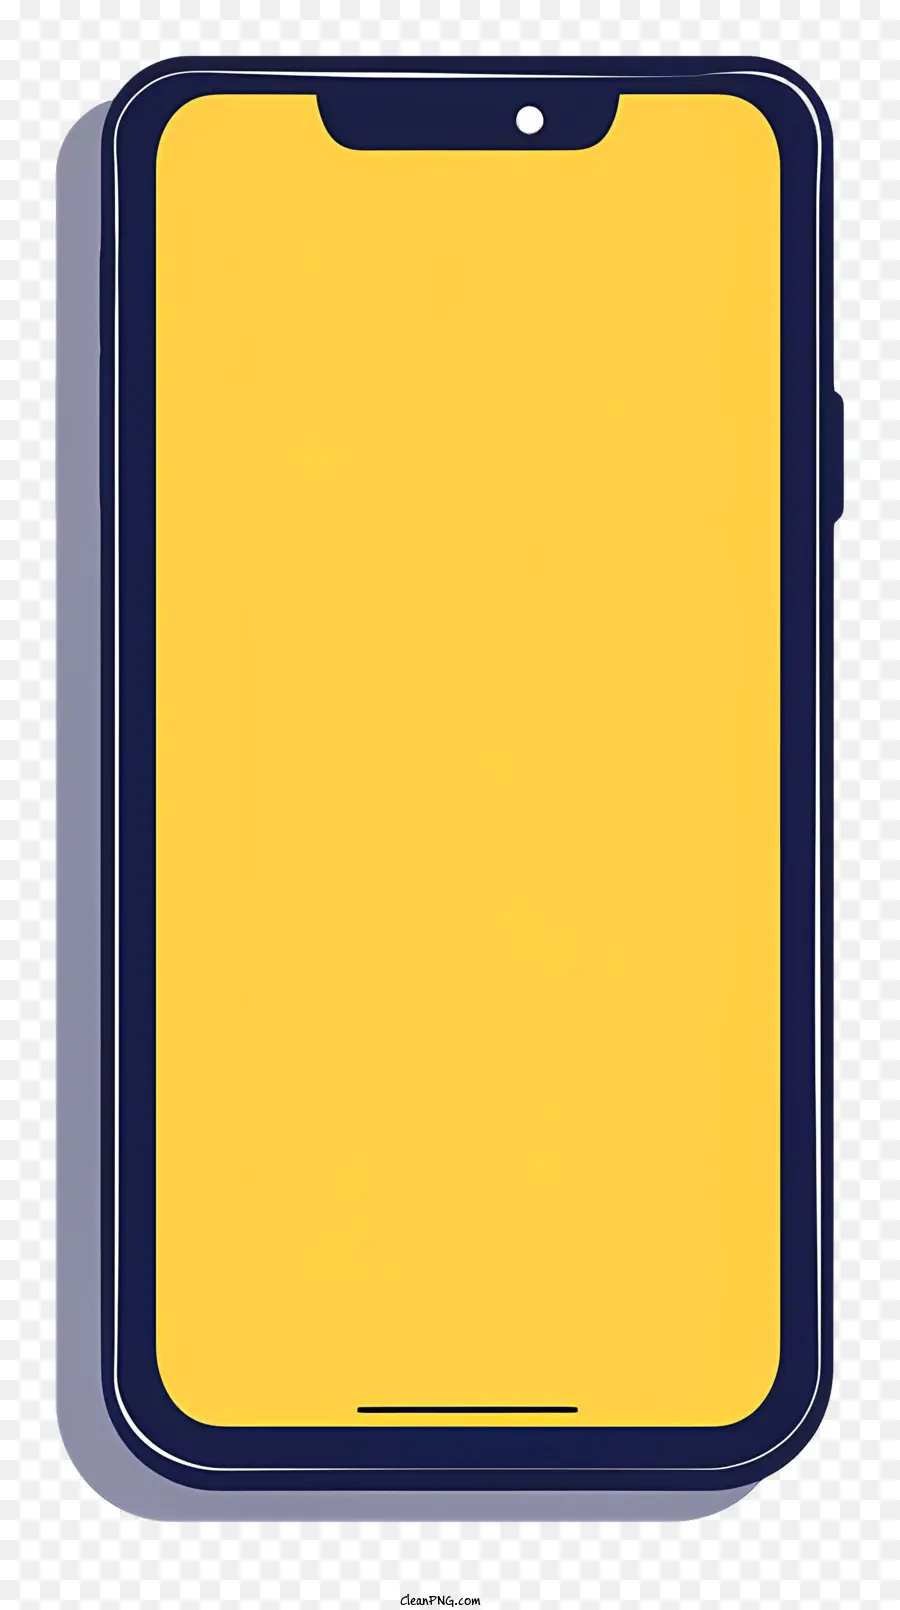 sfondo giallo - Smartphone giallo con custodia nera e fotocamera